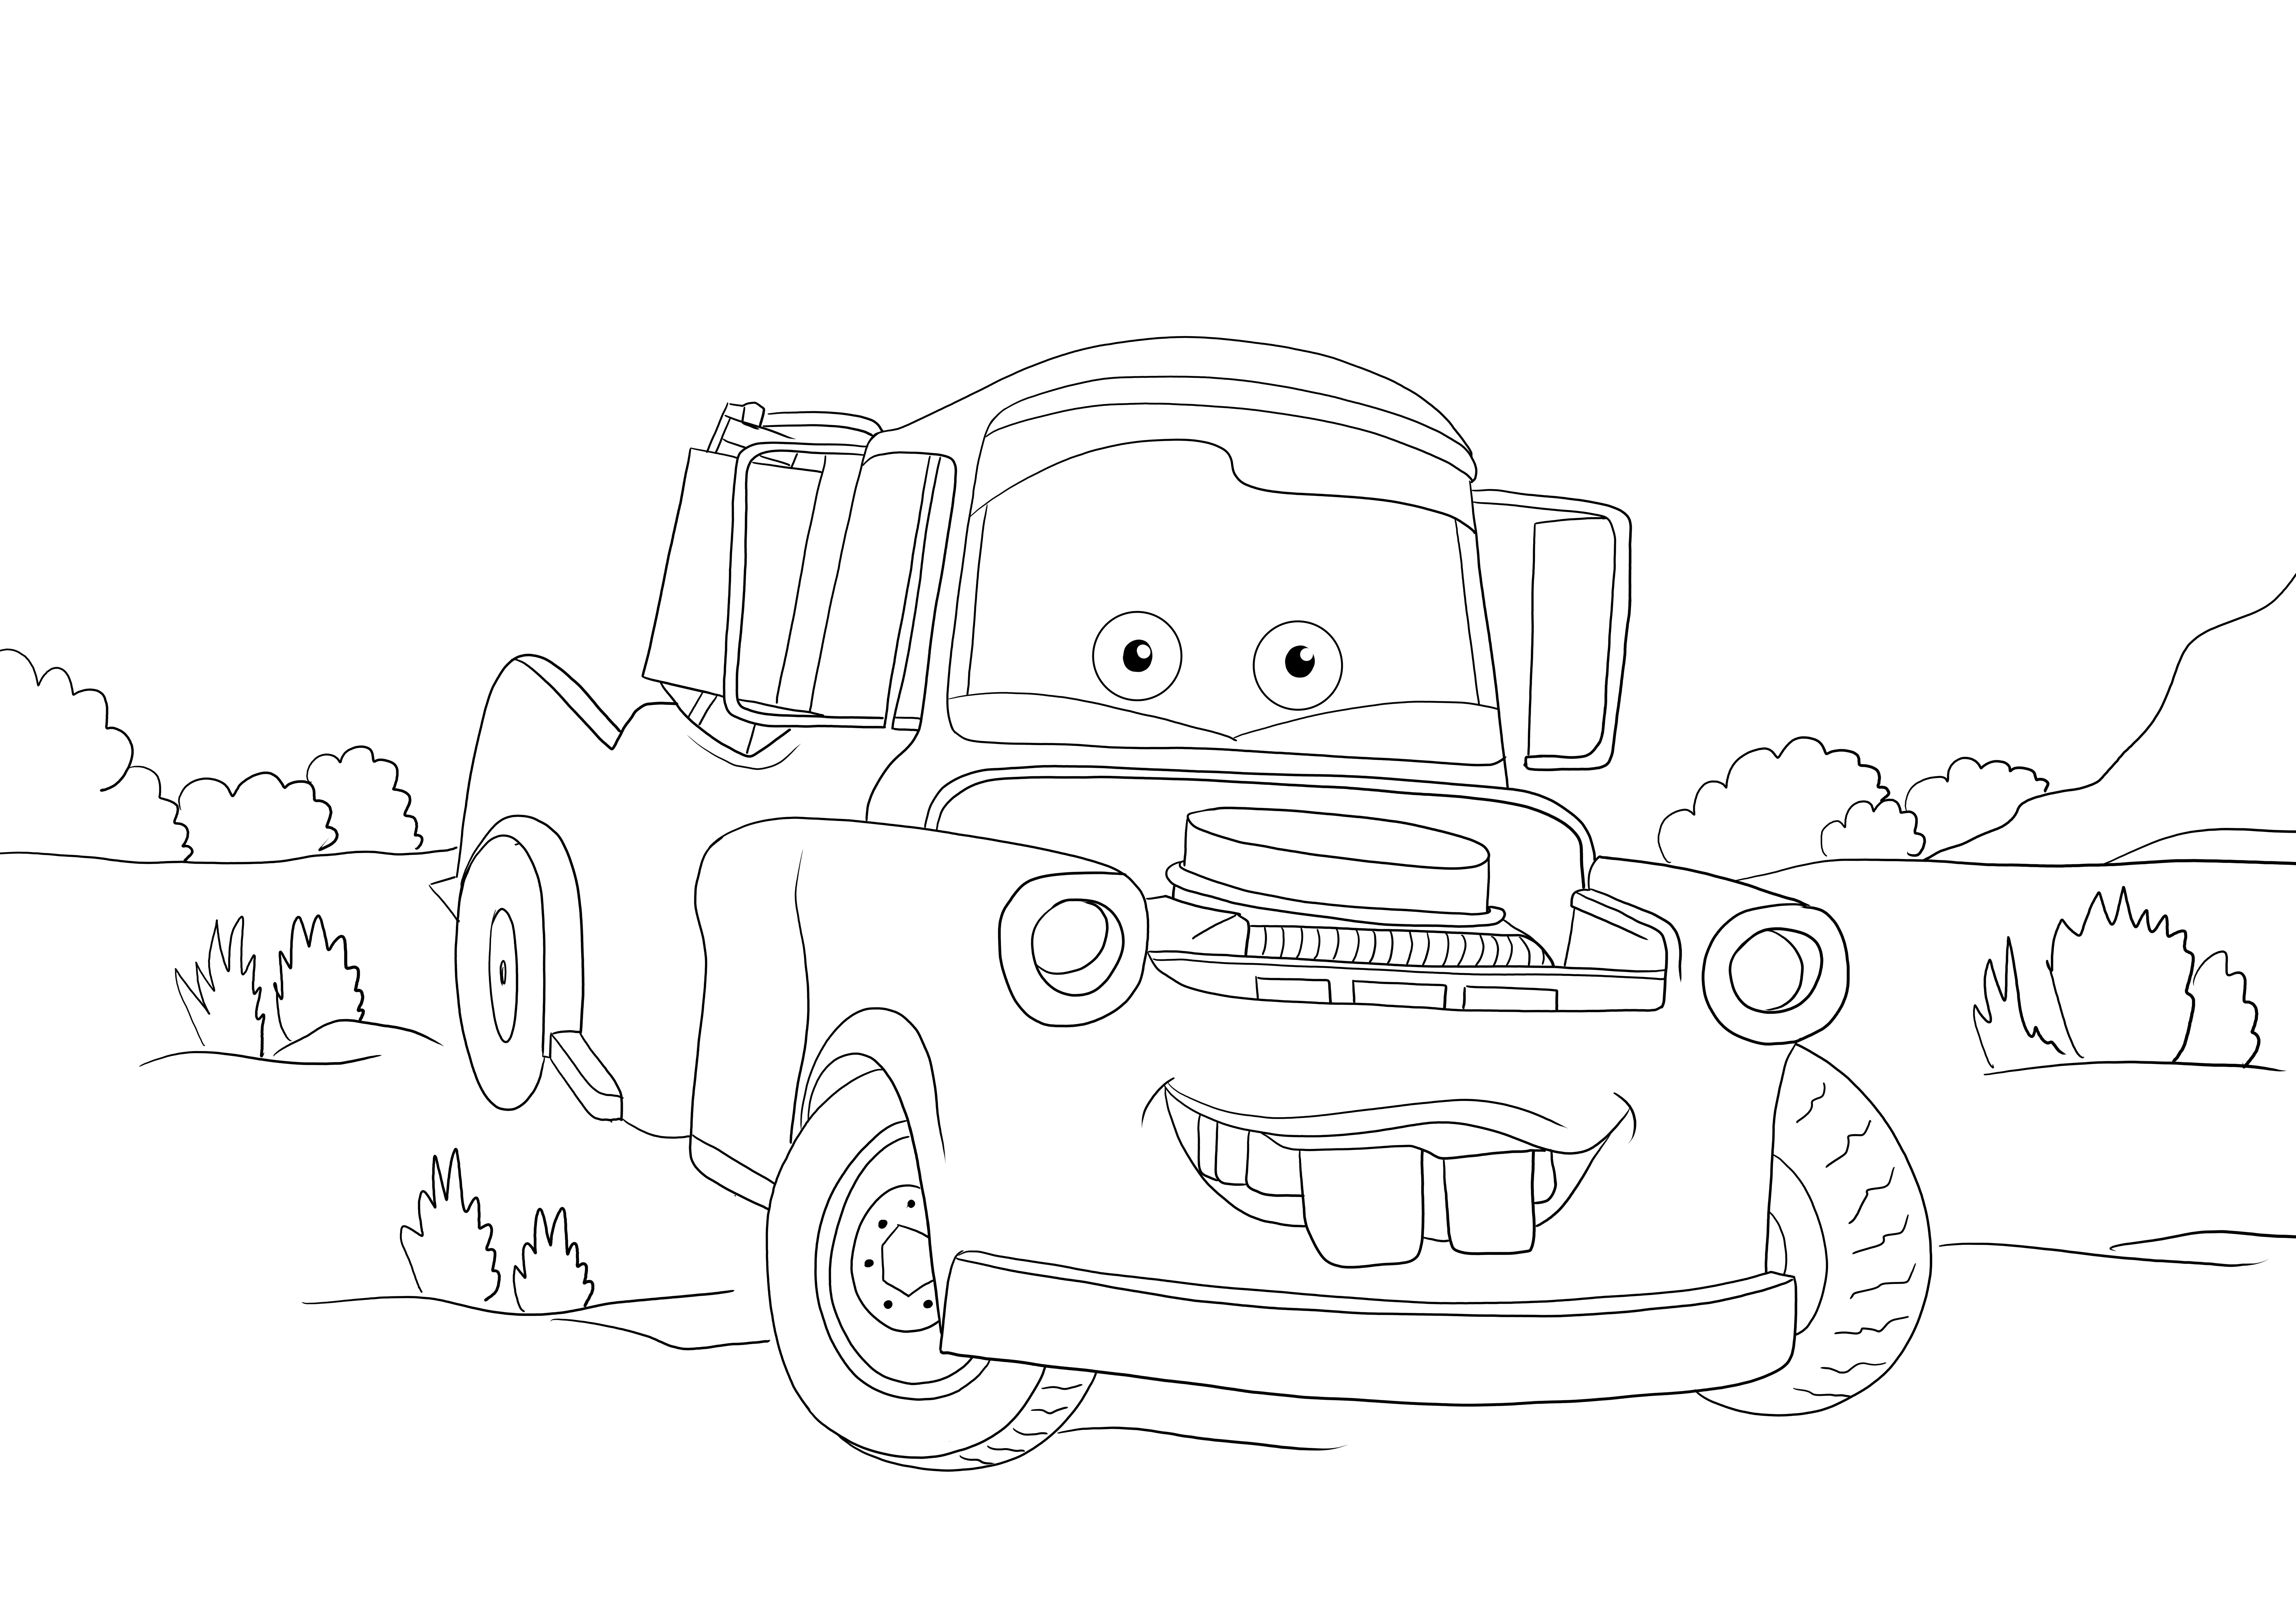 La imagen de Tow mater de Cars 3 está a la espera de ser coloreada, ya que se puede imprimir o descargar gratis